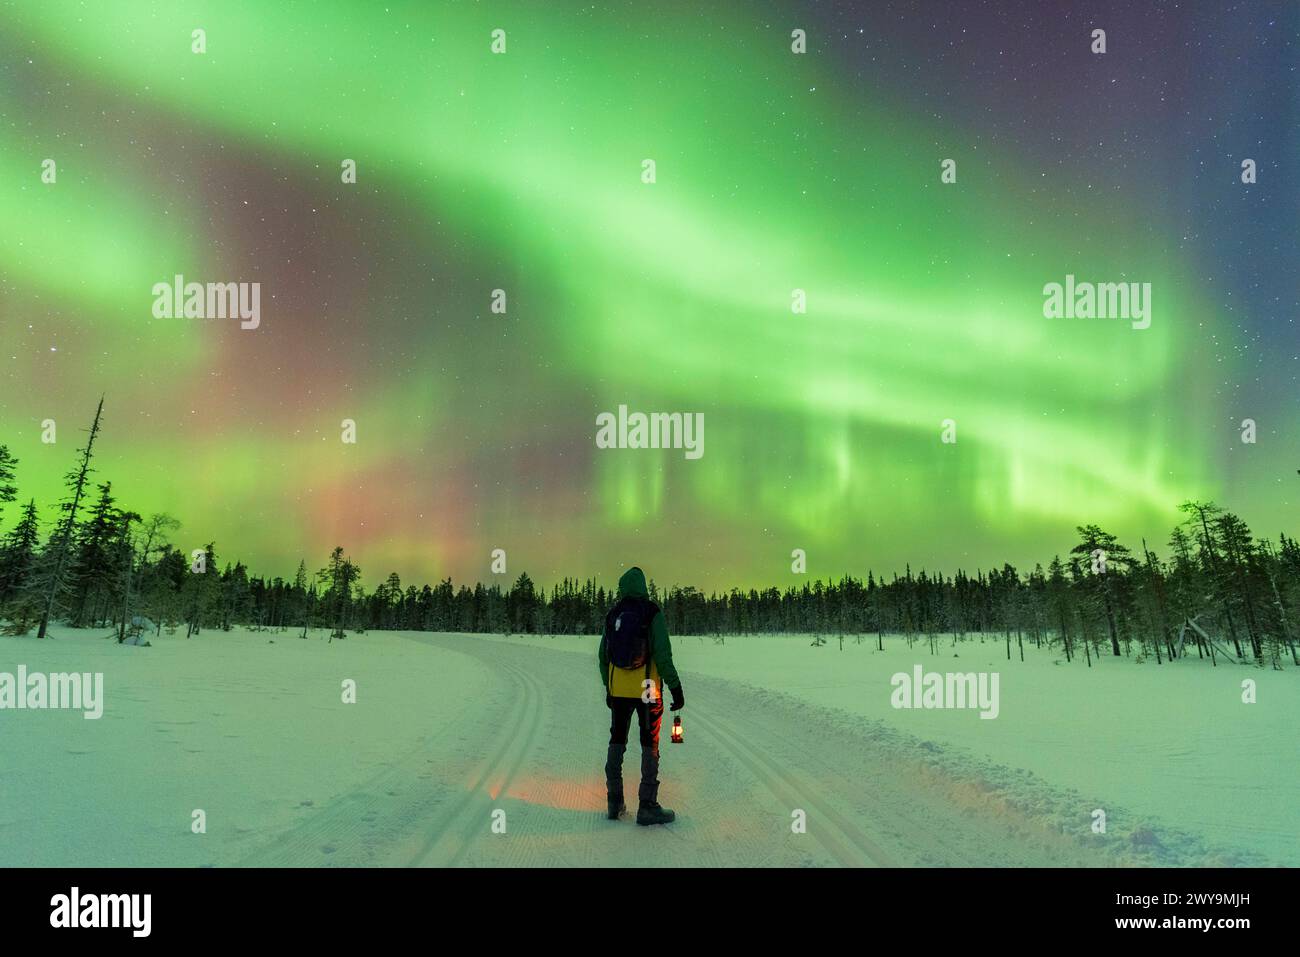 Mann mit Laterne in der Winternacht, der auf einer leeren, eisigen Straße spaziert und dabei Polarlichter, Aurora Borealis, Akaslompolo, Pallas-Yllastunturi Nation bewundert Stockfoto